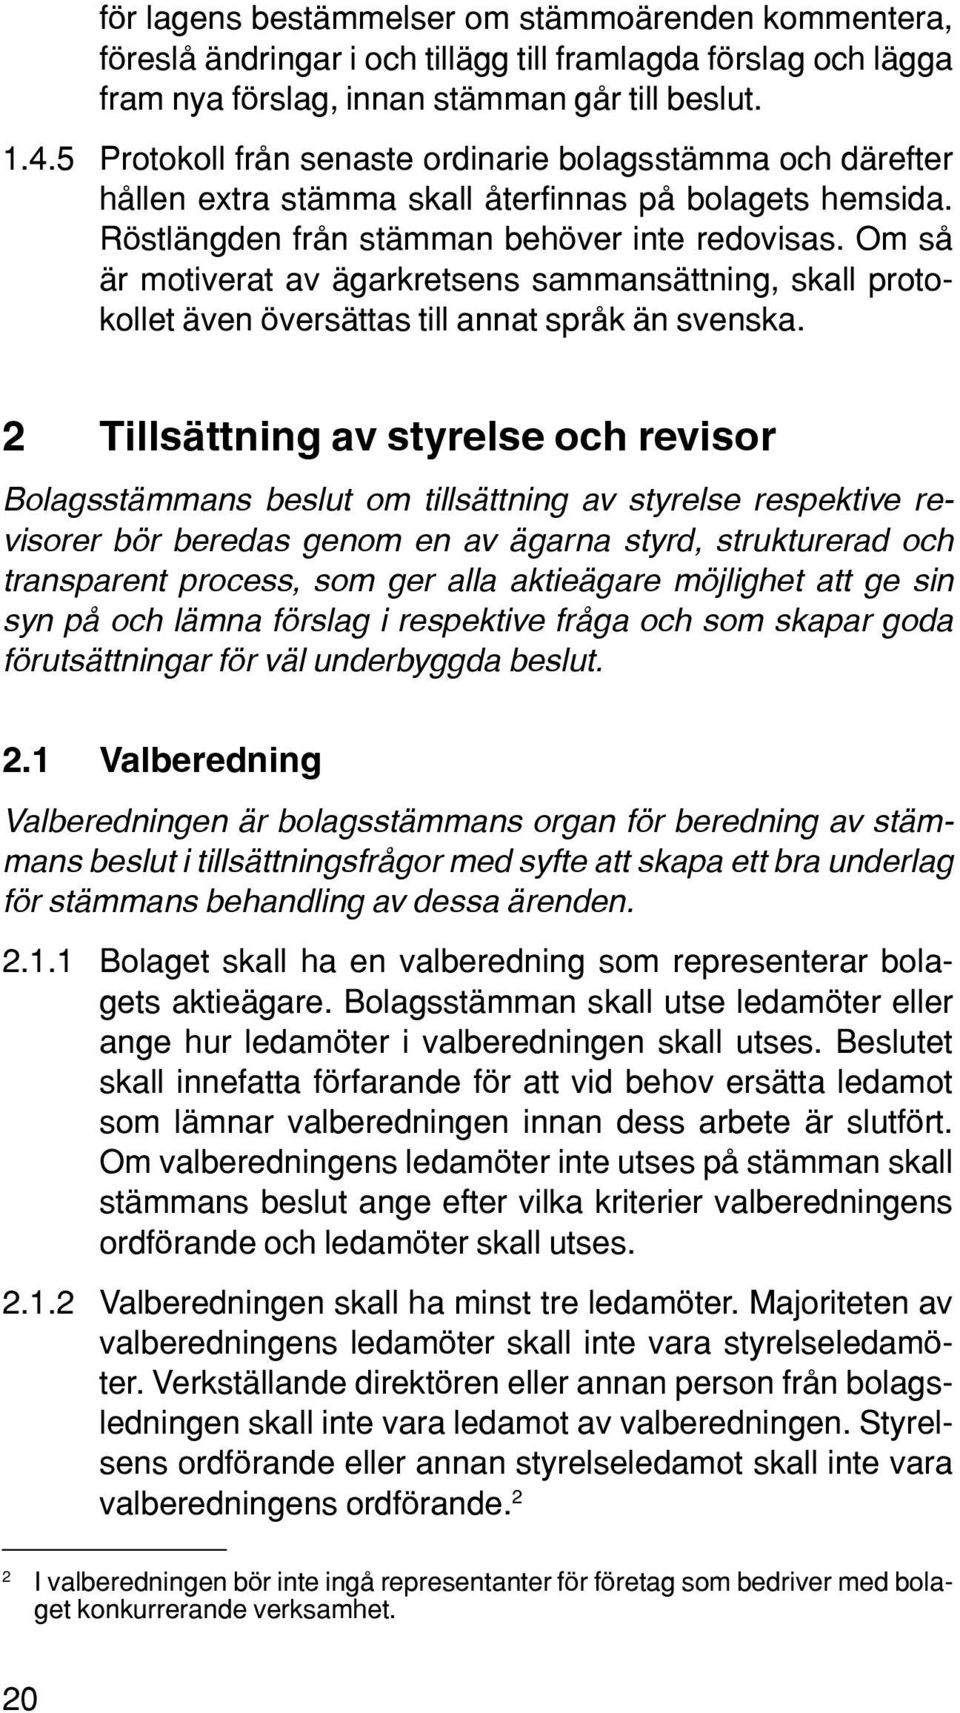 Om så är motiverat av ägarkretsens sammansättning, skall protokollet även översättas till annat språk än svenska.